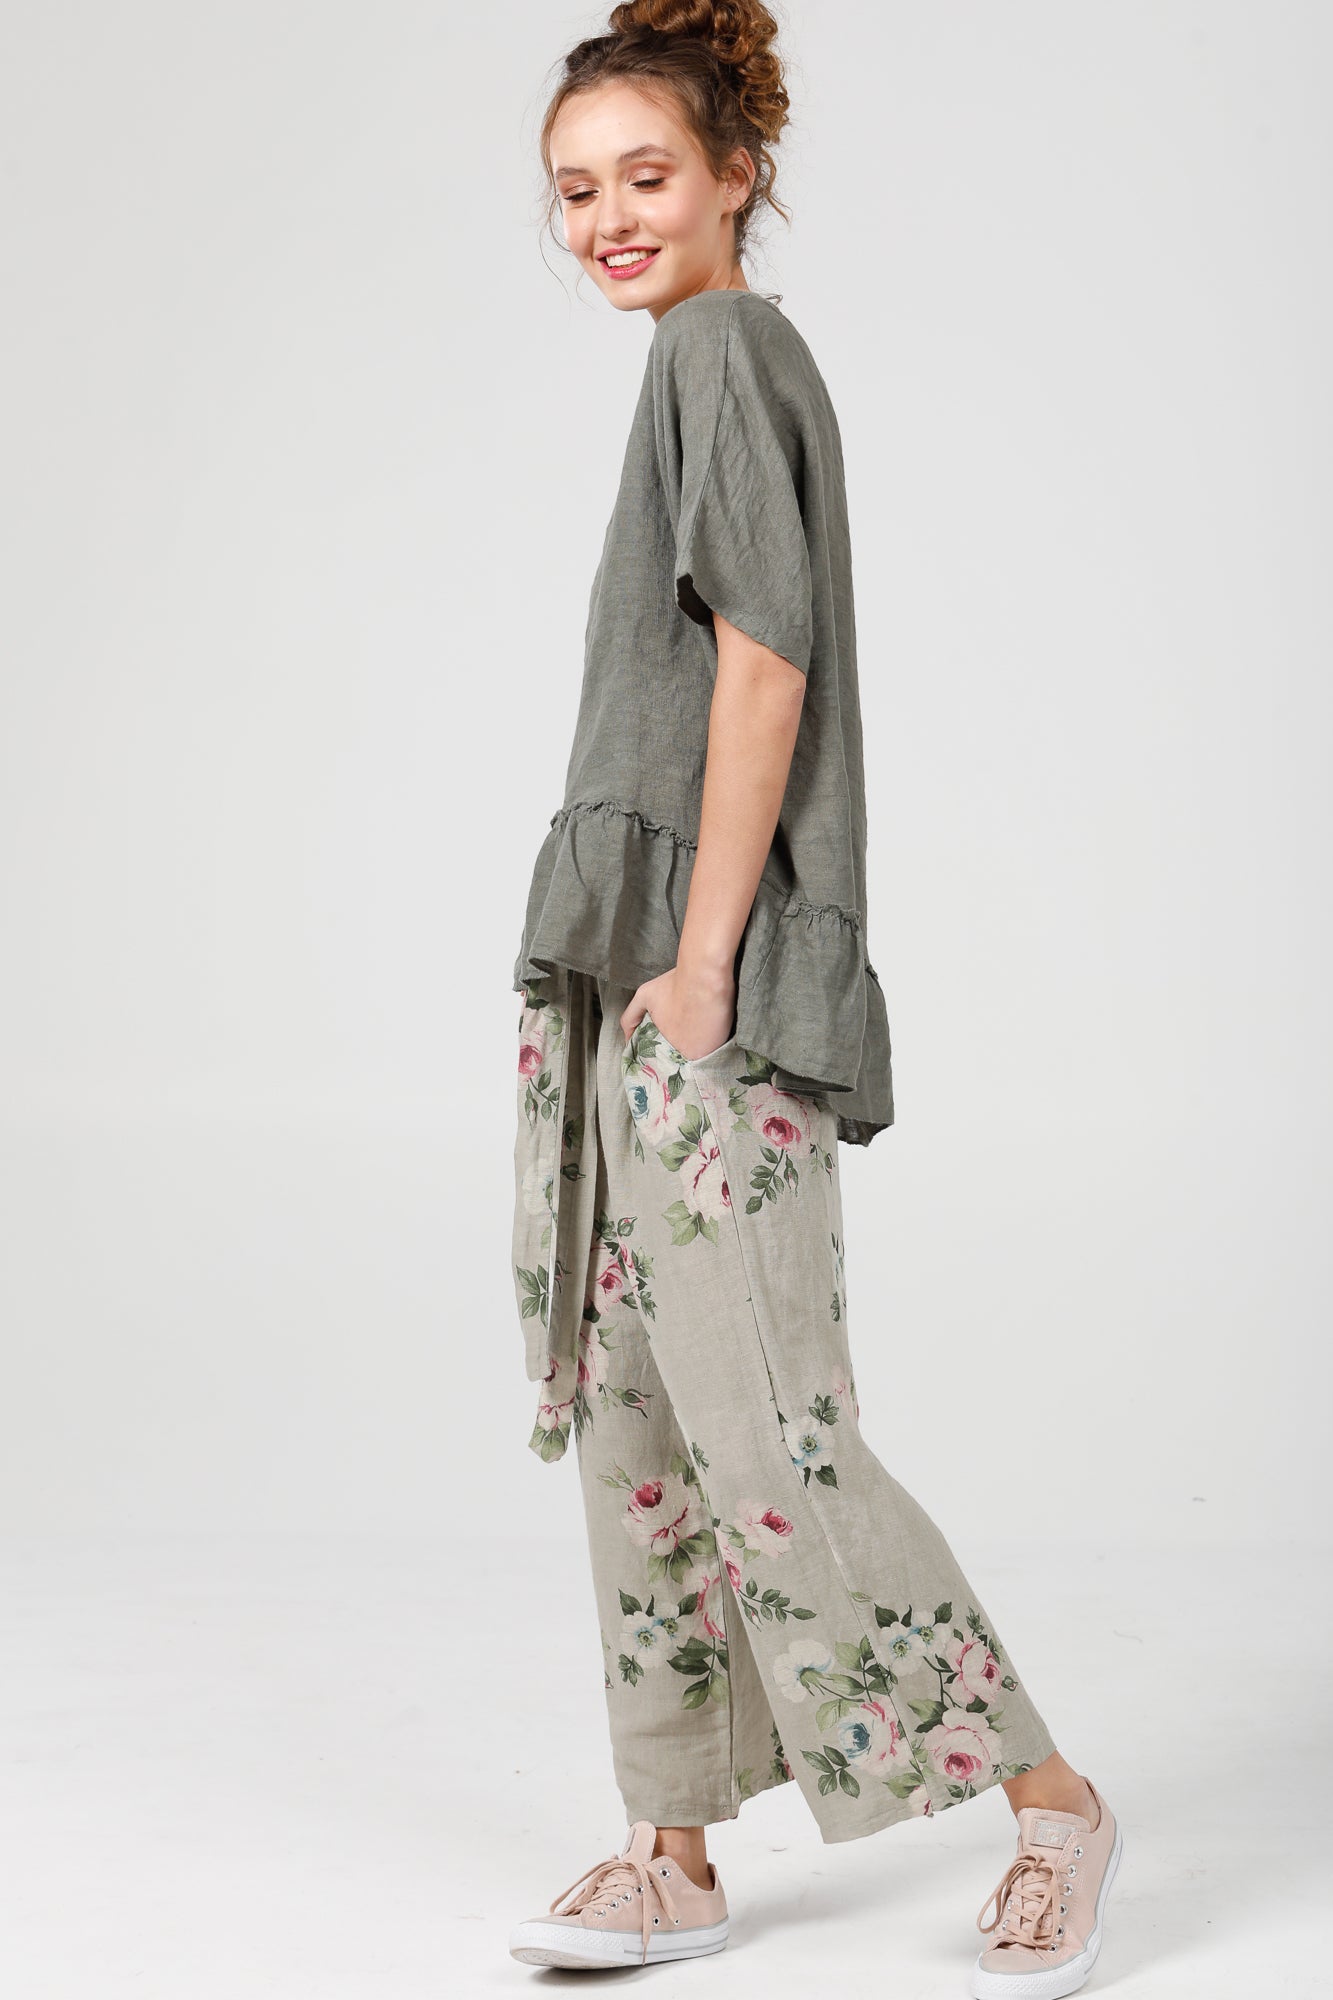 Eva Linen  floral pants   Seamist